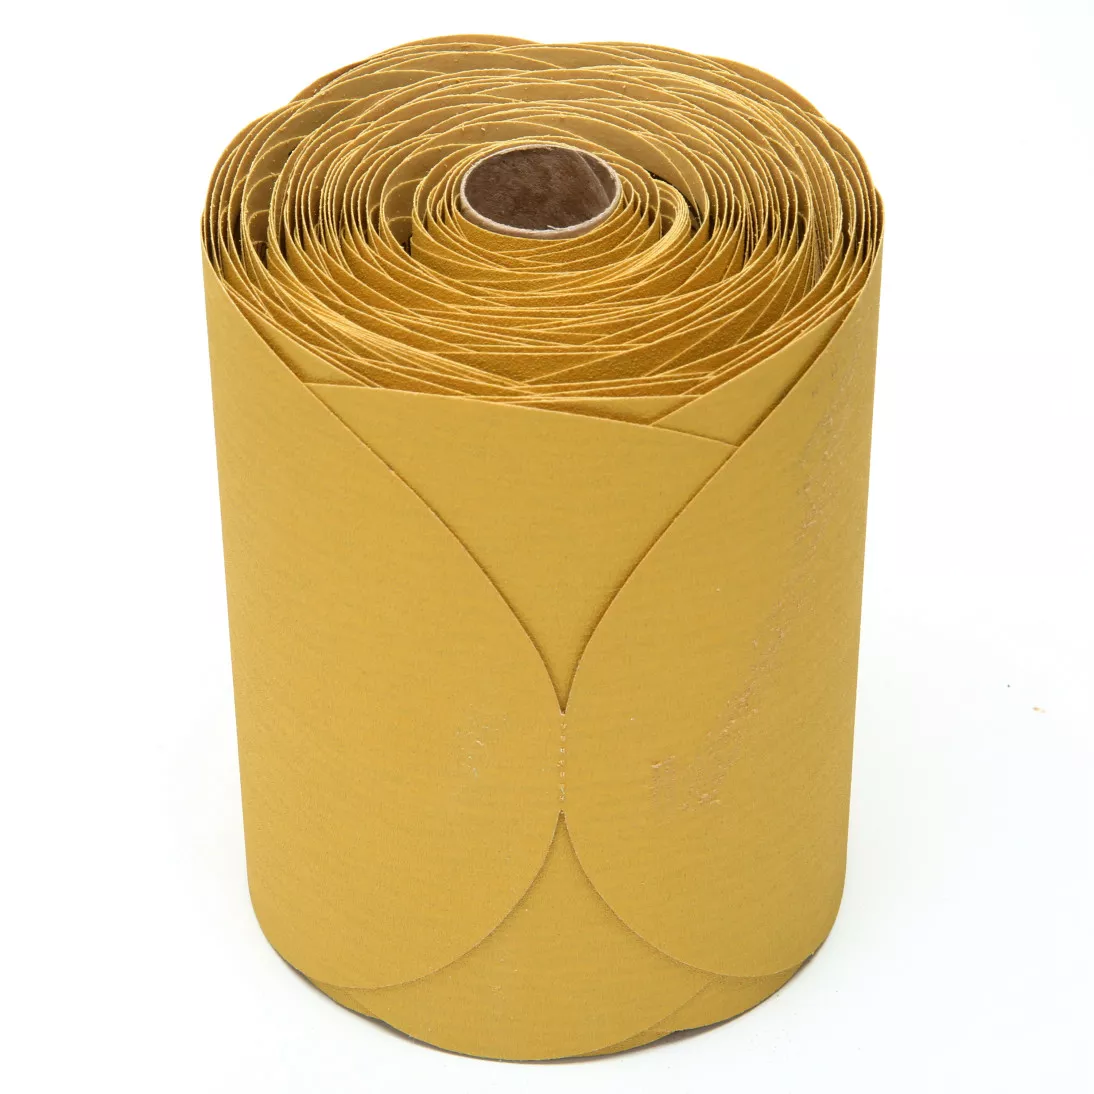 3M™ Stikit™ Gold Disc Roll, 01440, 6 in, P150, 175 discs per roll, 6
rolls per case